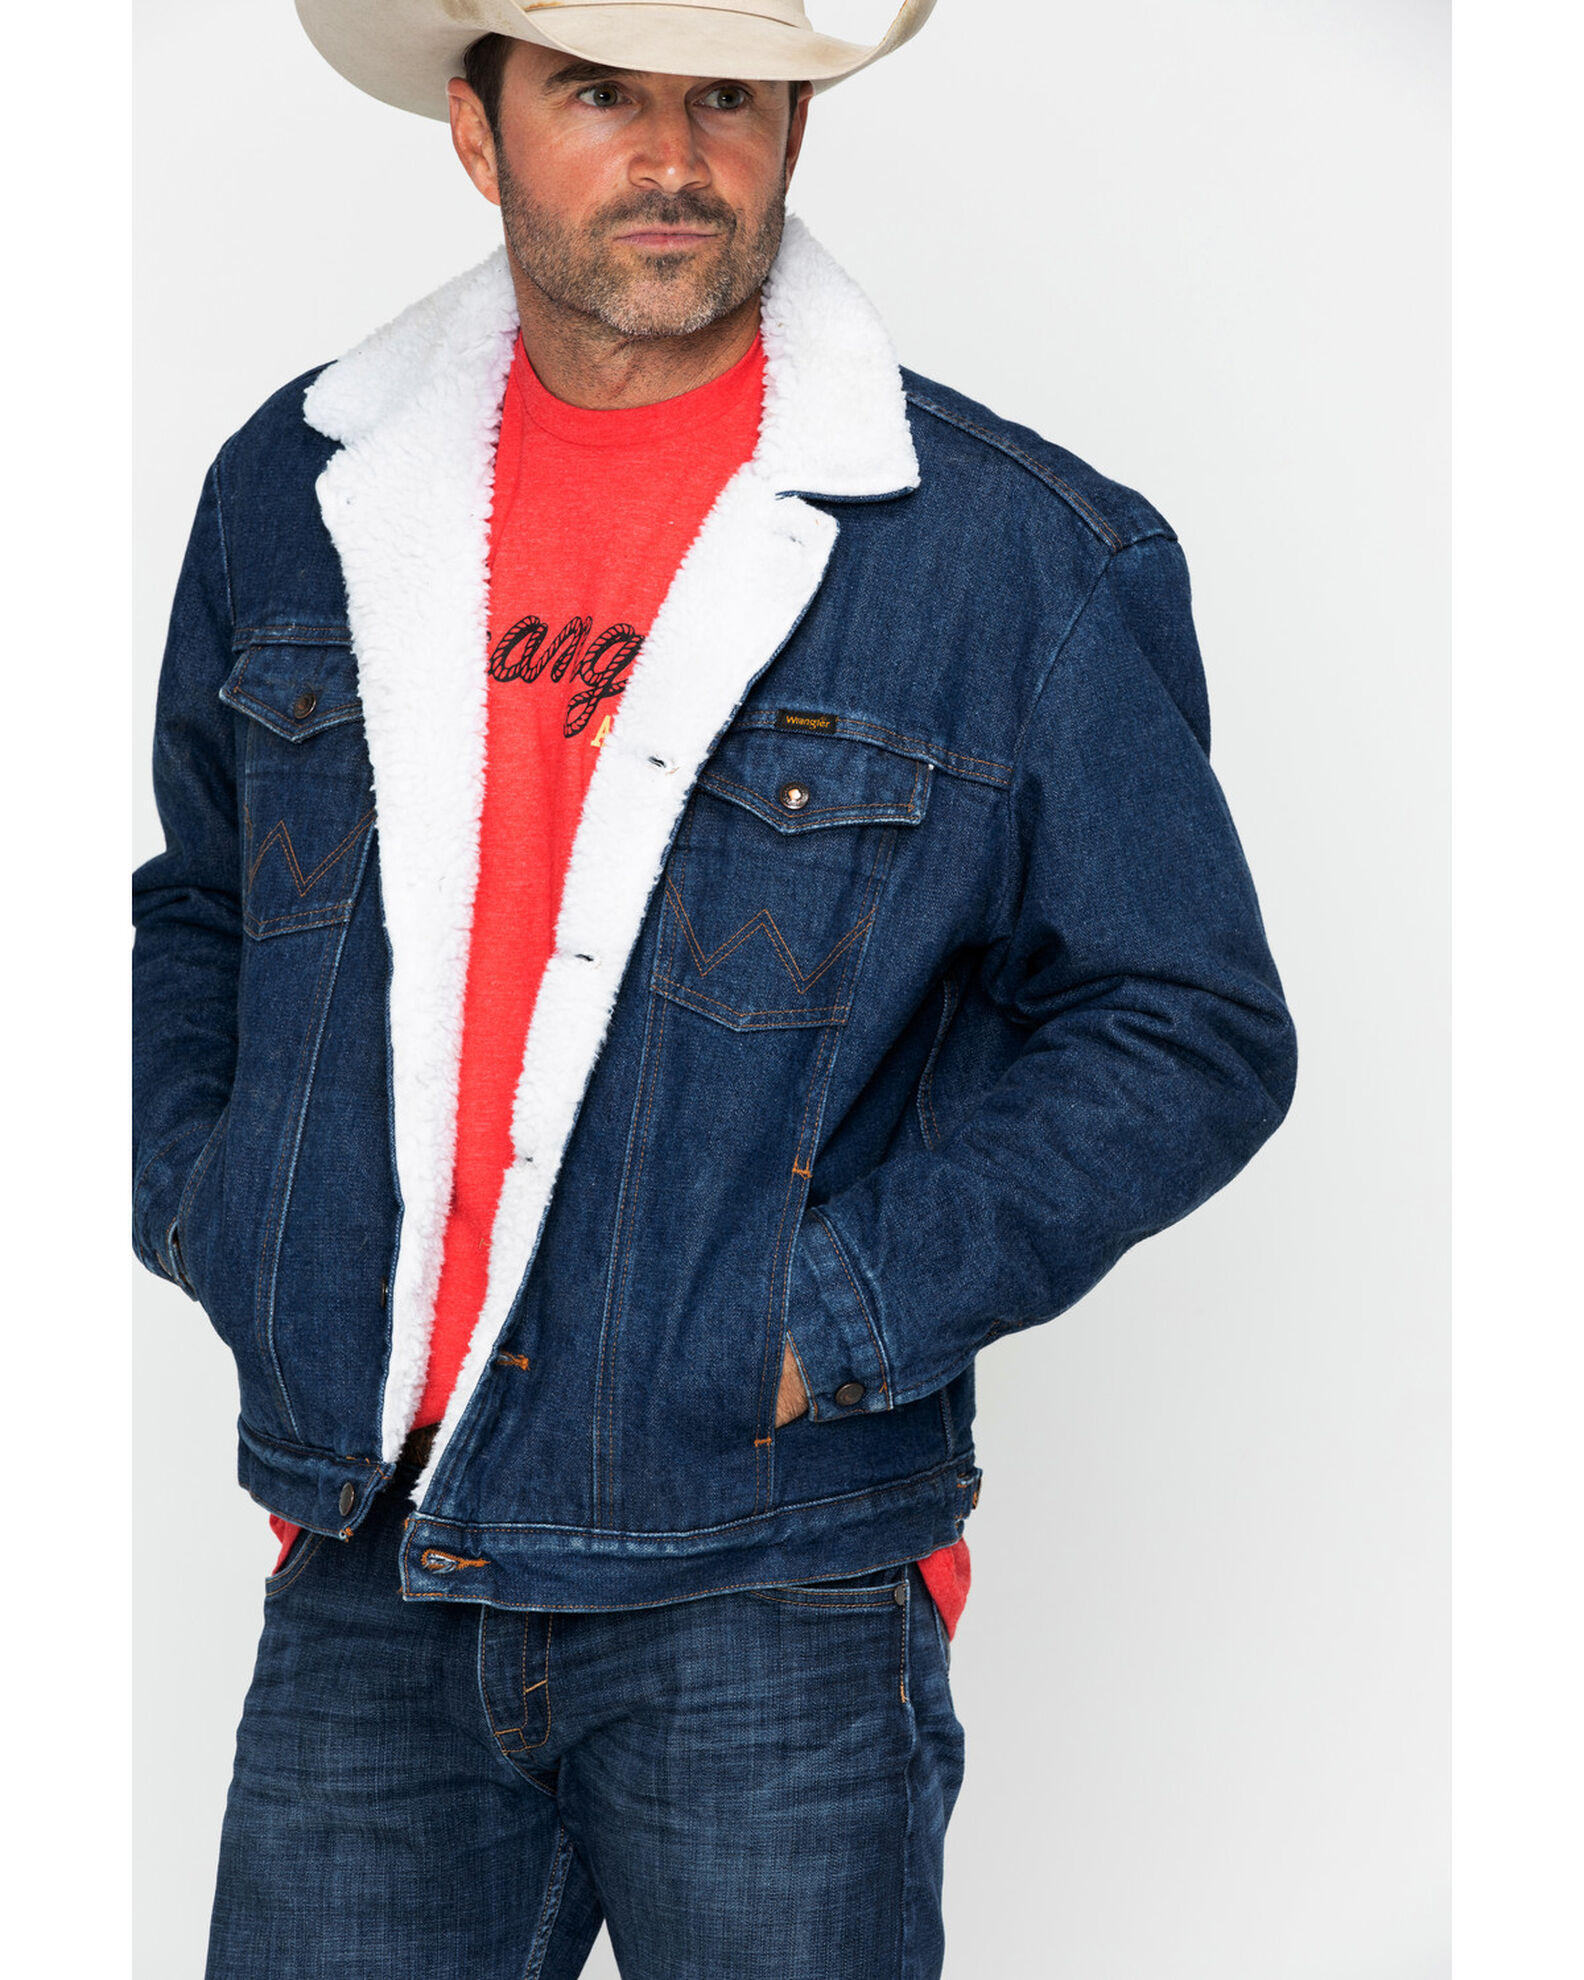 build Foranderlig Bestået Wrangler Men's Sherpa Lined Denim Jacket - Country Outfitter